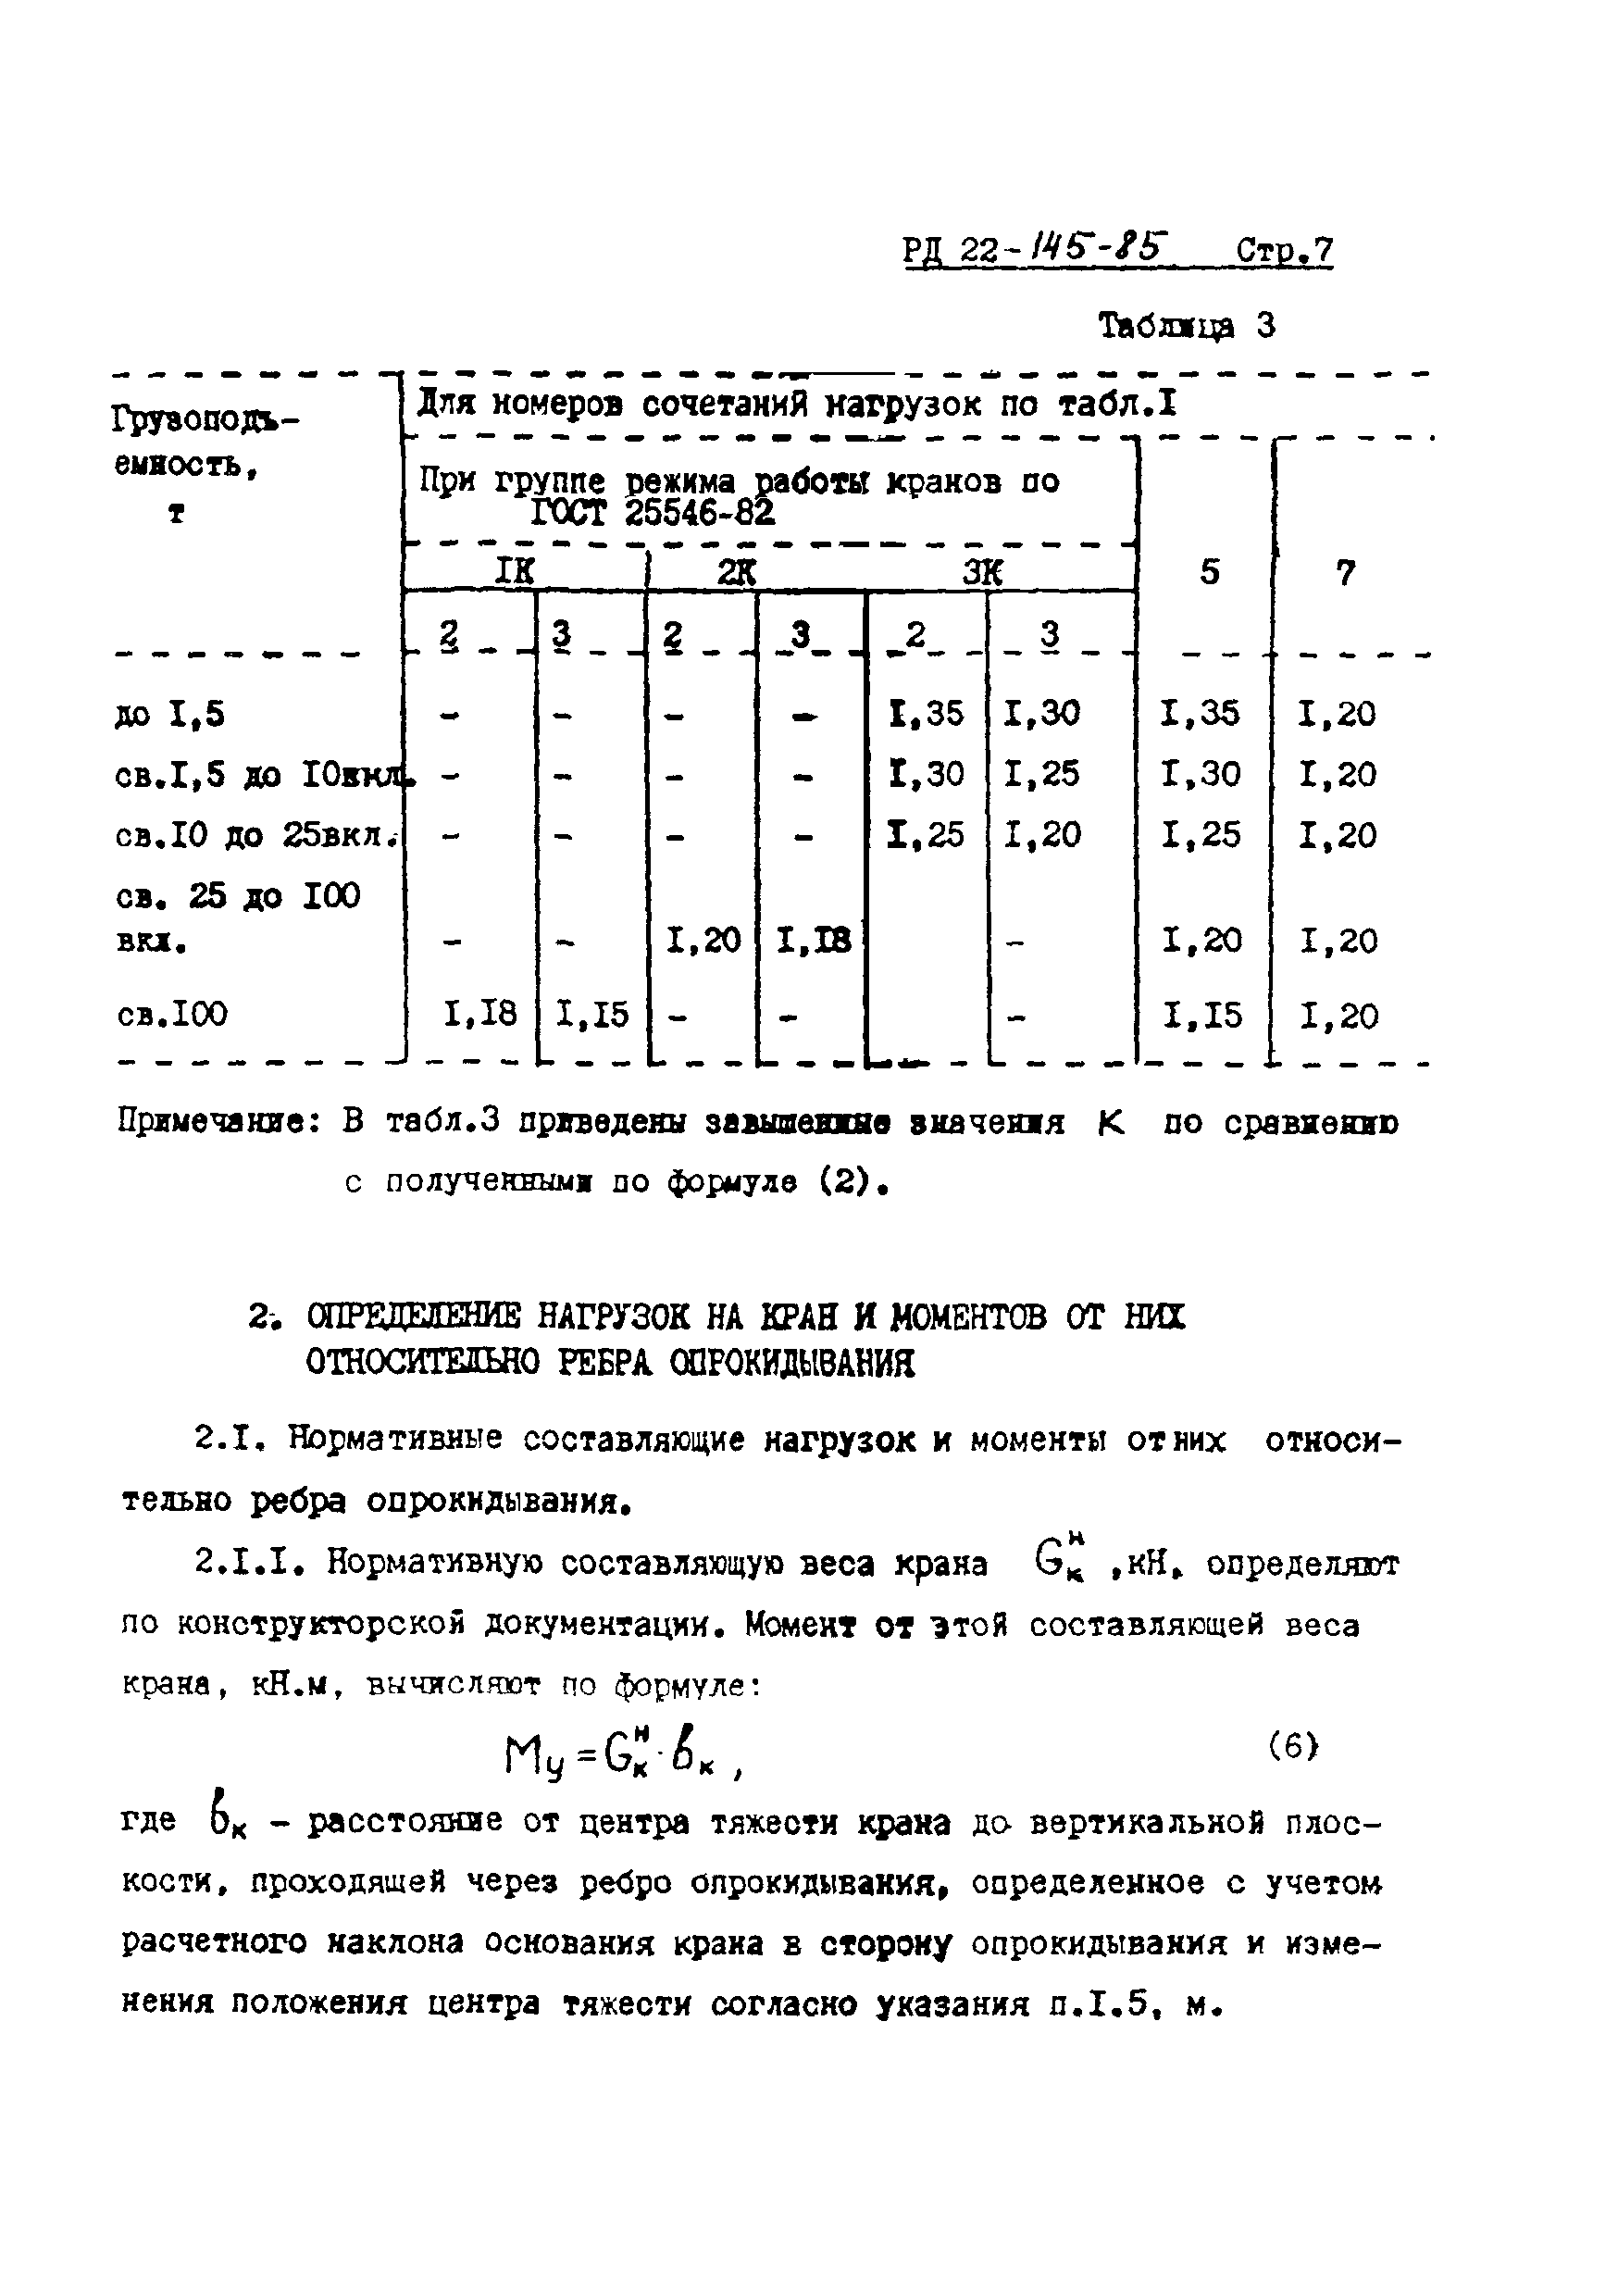 РД 22-145-85